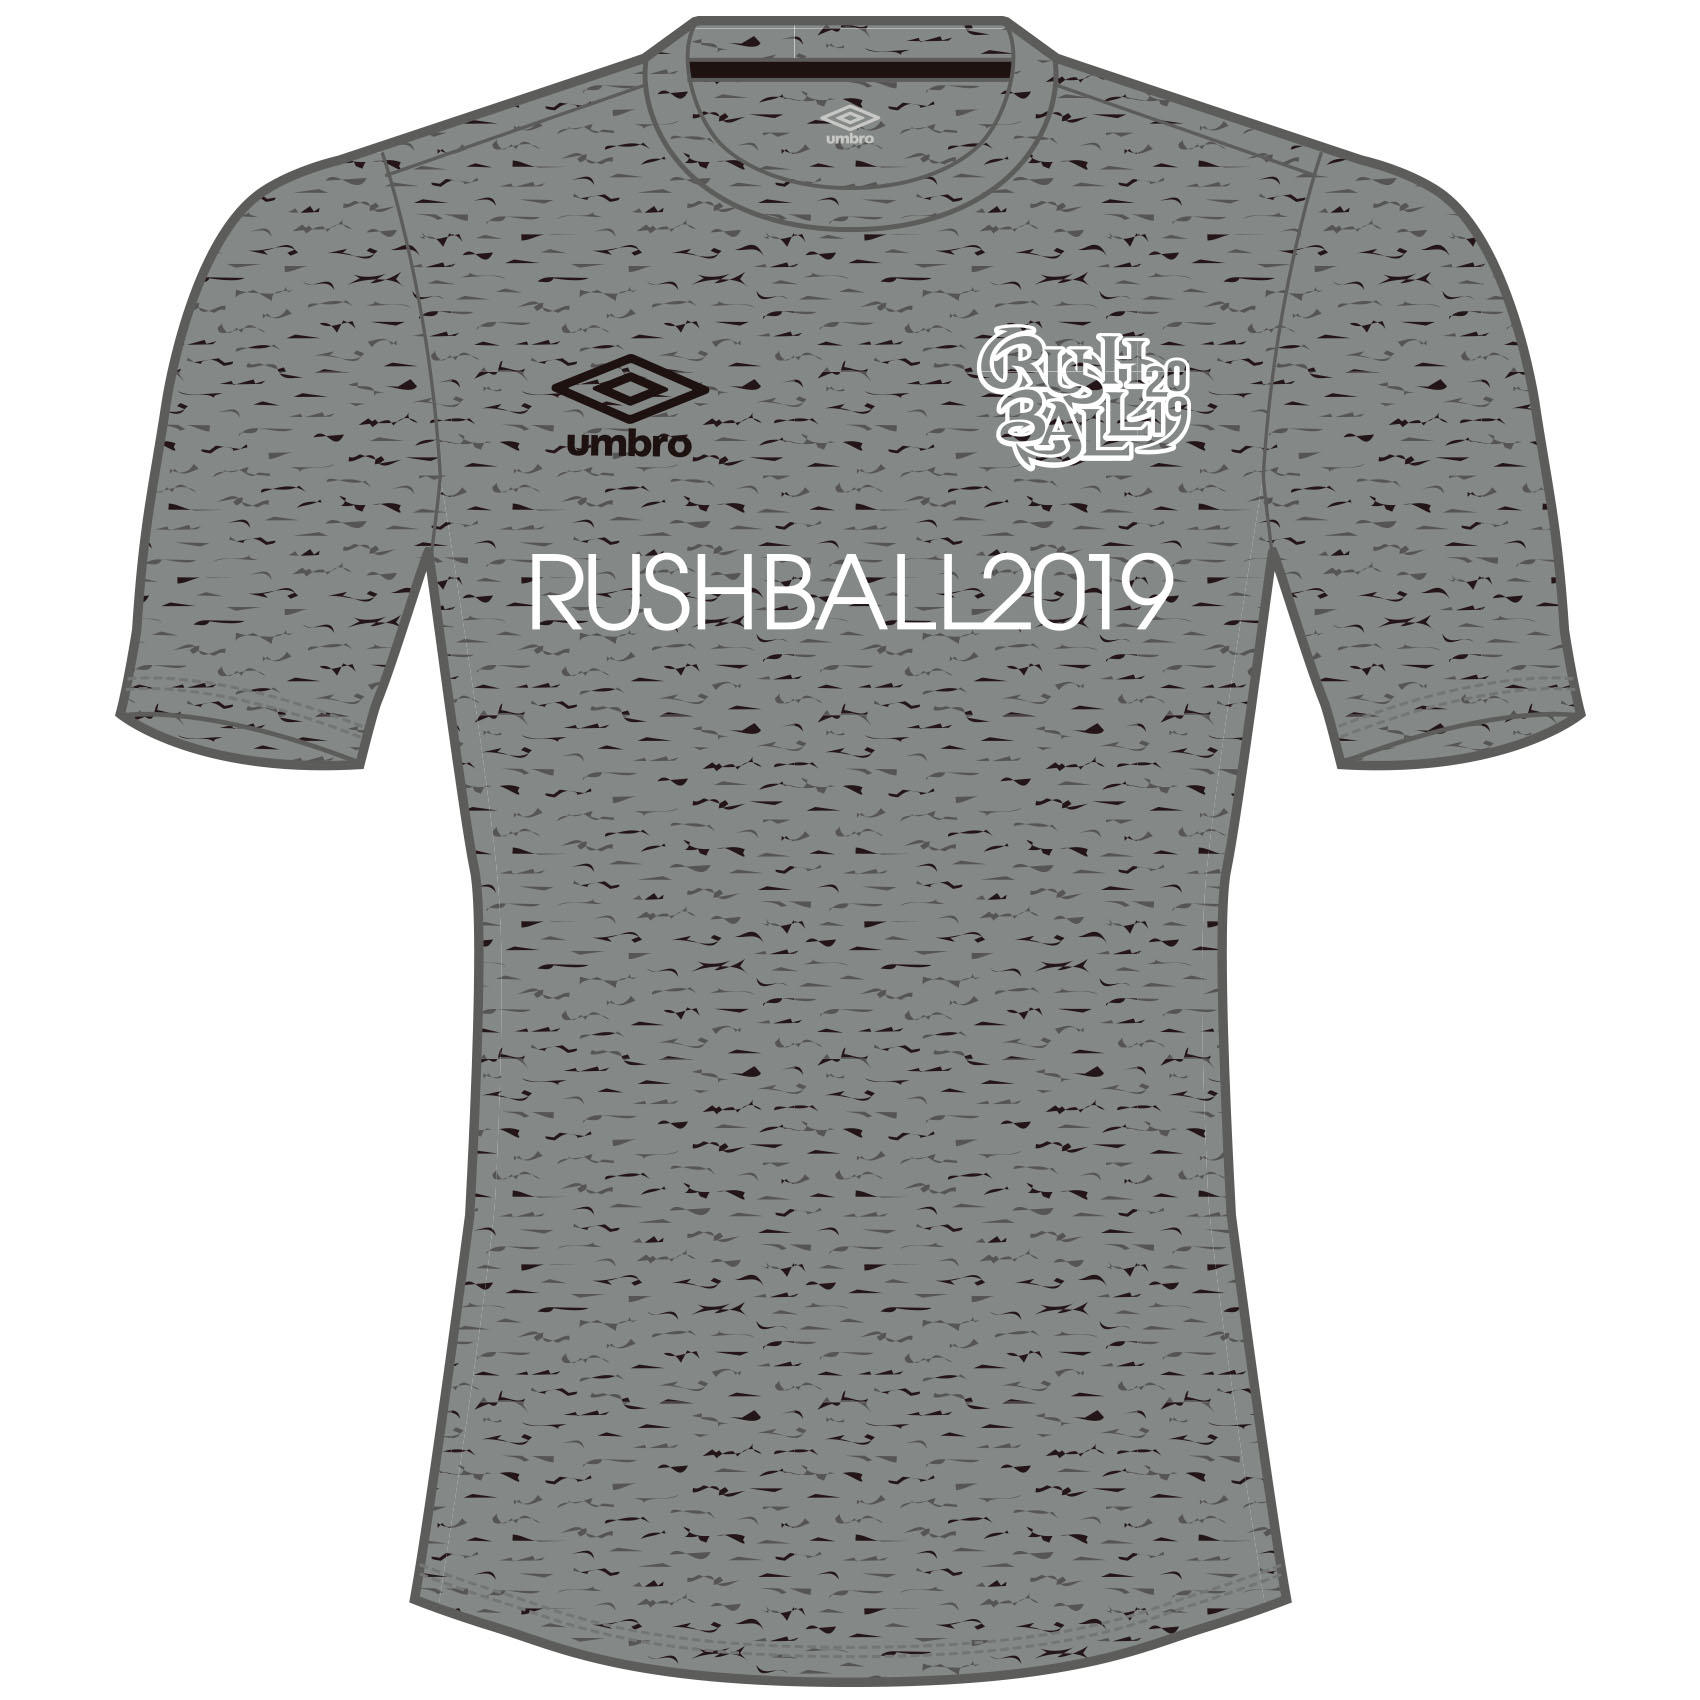 GOODS | RUSH BALL 2019